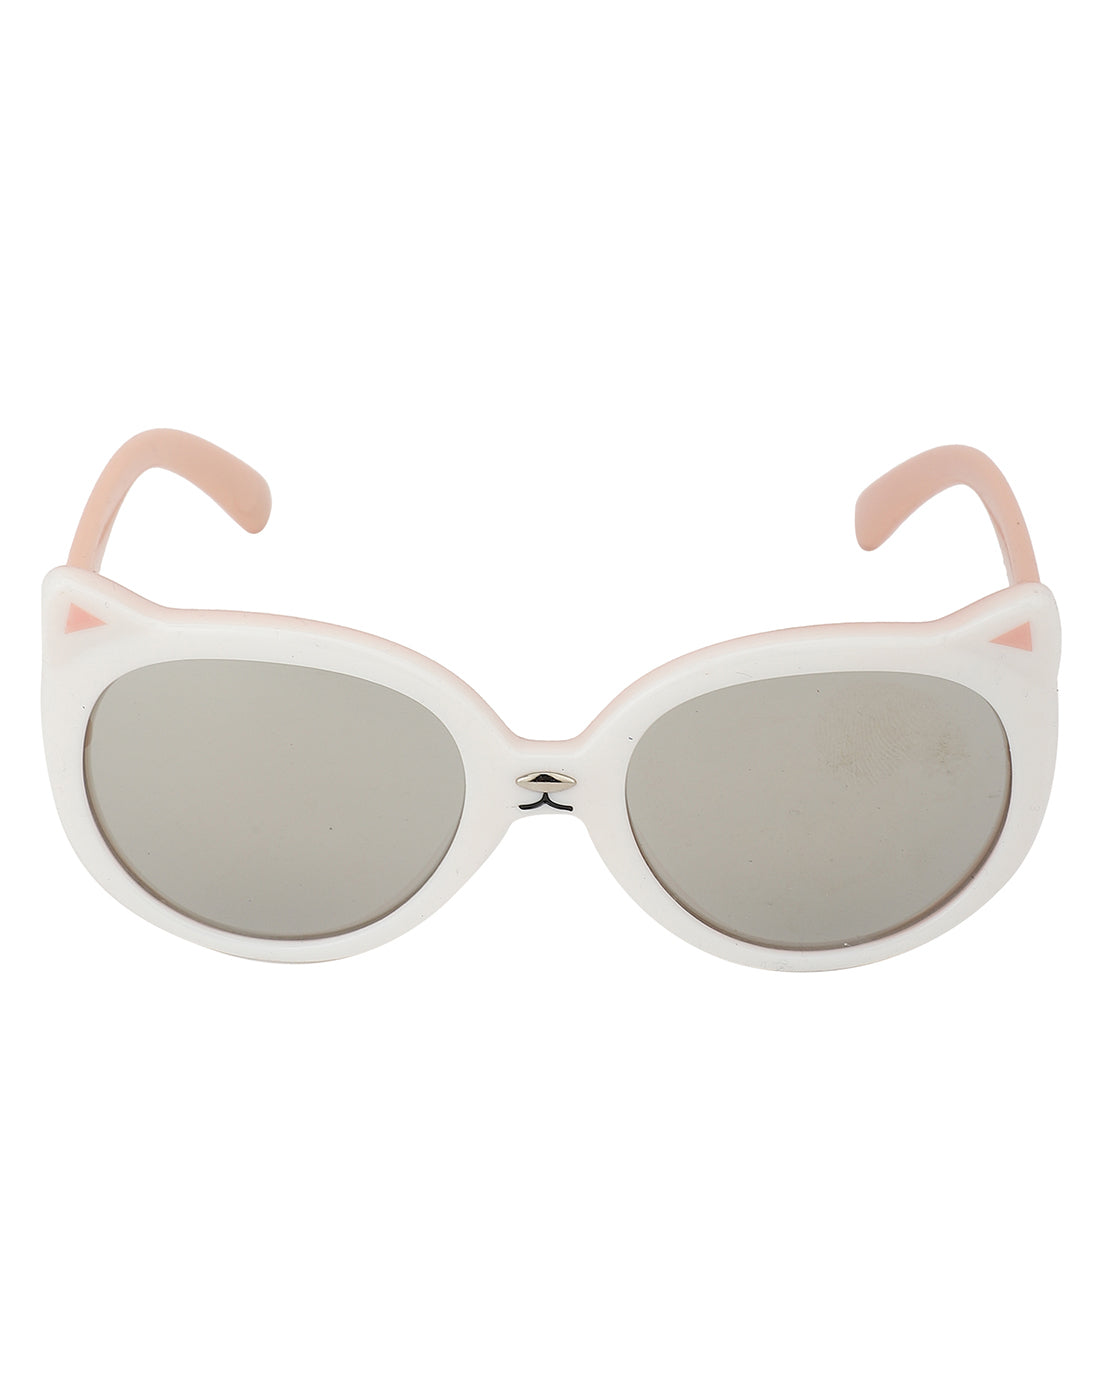 Versace 55Mm Cat Eye Sunglasses - White